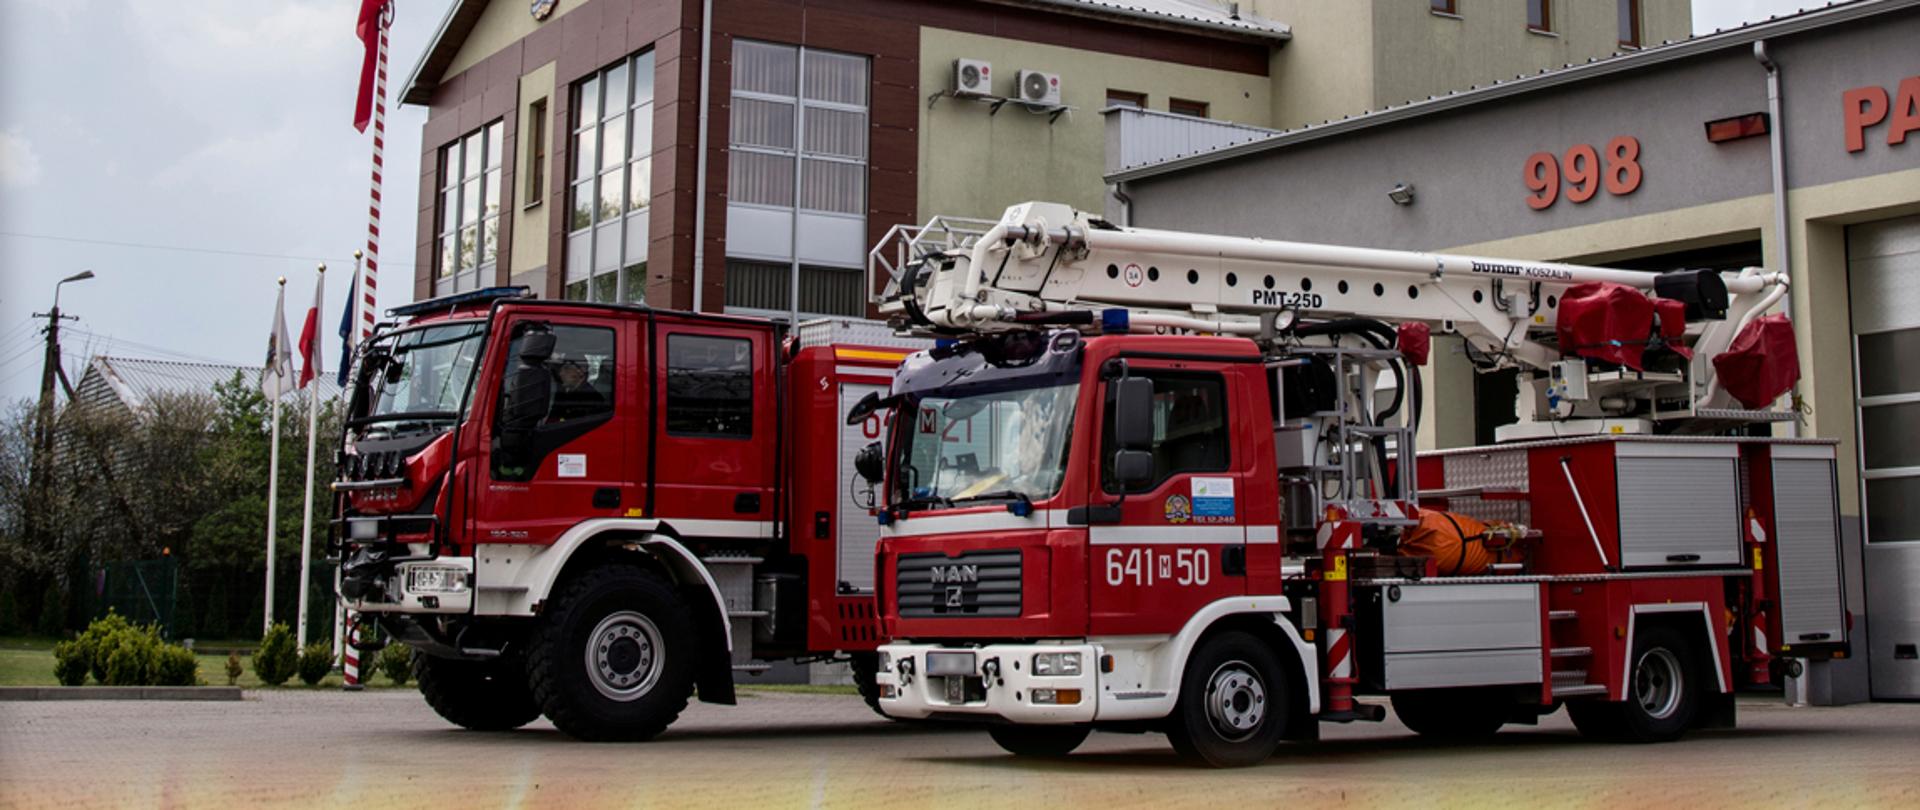 Grafika prezentująca św. Floriana gaszącego pożar oraz dwa samochody strażackie na tle sokołowskiej Komendy Powiatowej Państwowej Straży Pożarnej wraz z białym napisem "Dziękujemy za służbę!" umieszczonym na dole